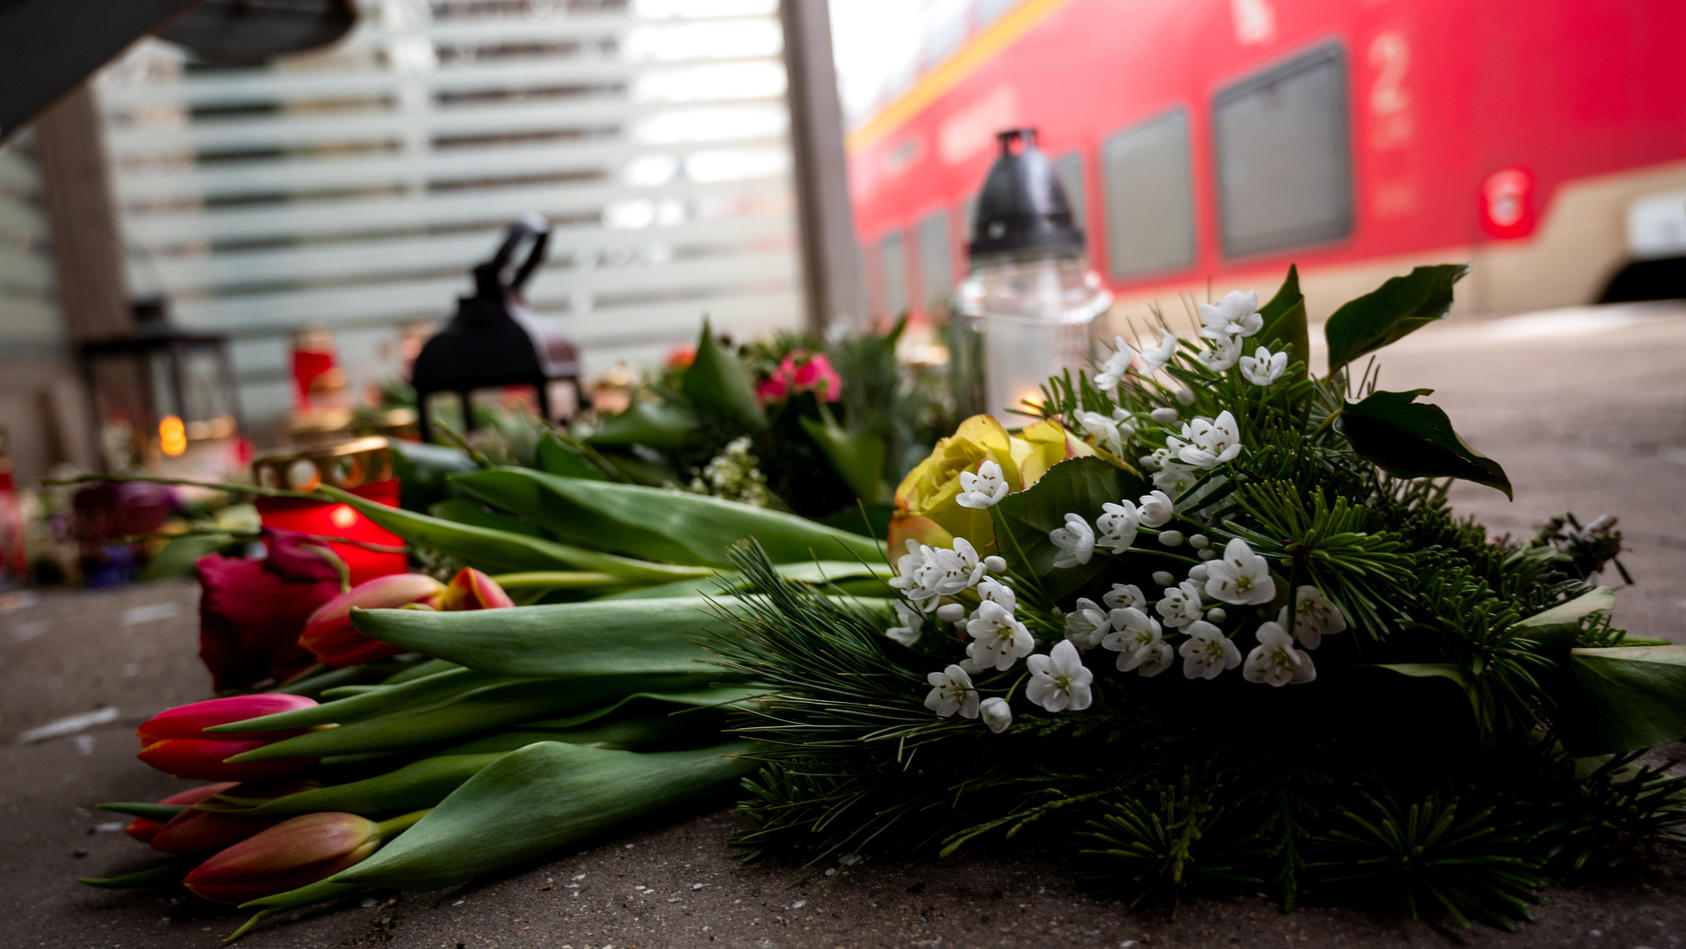 Tödliche Messerattacke in Regionalbahn - Arbeitgeber trauert um Auszubildenden auf Facebook